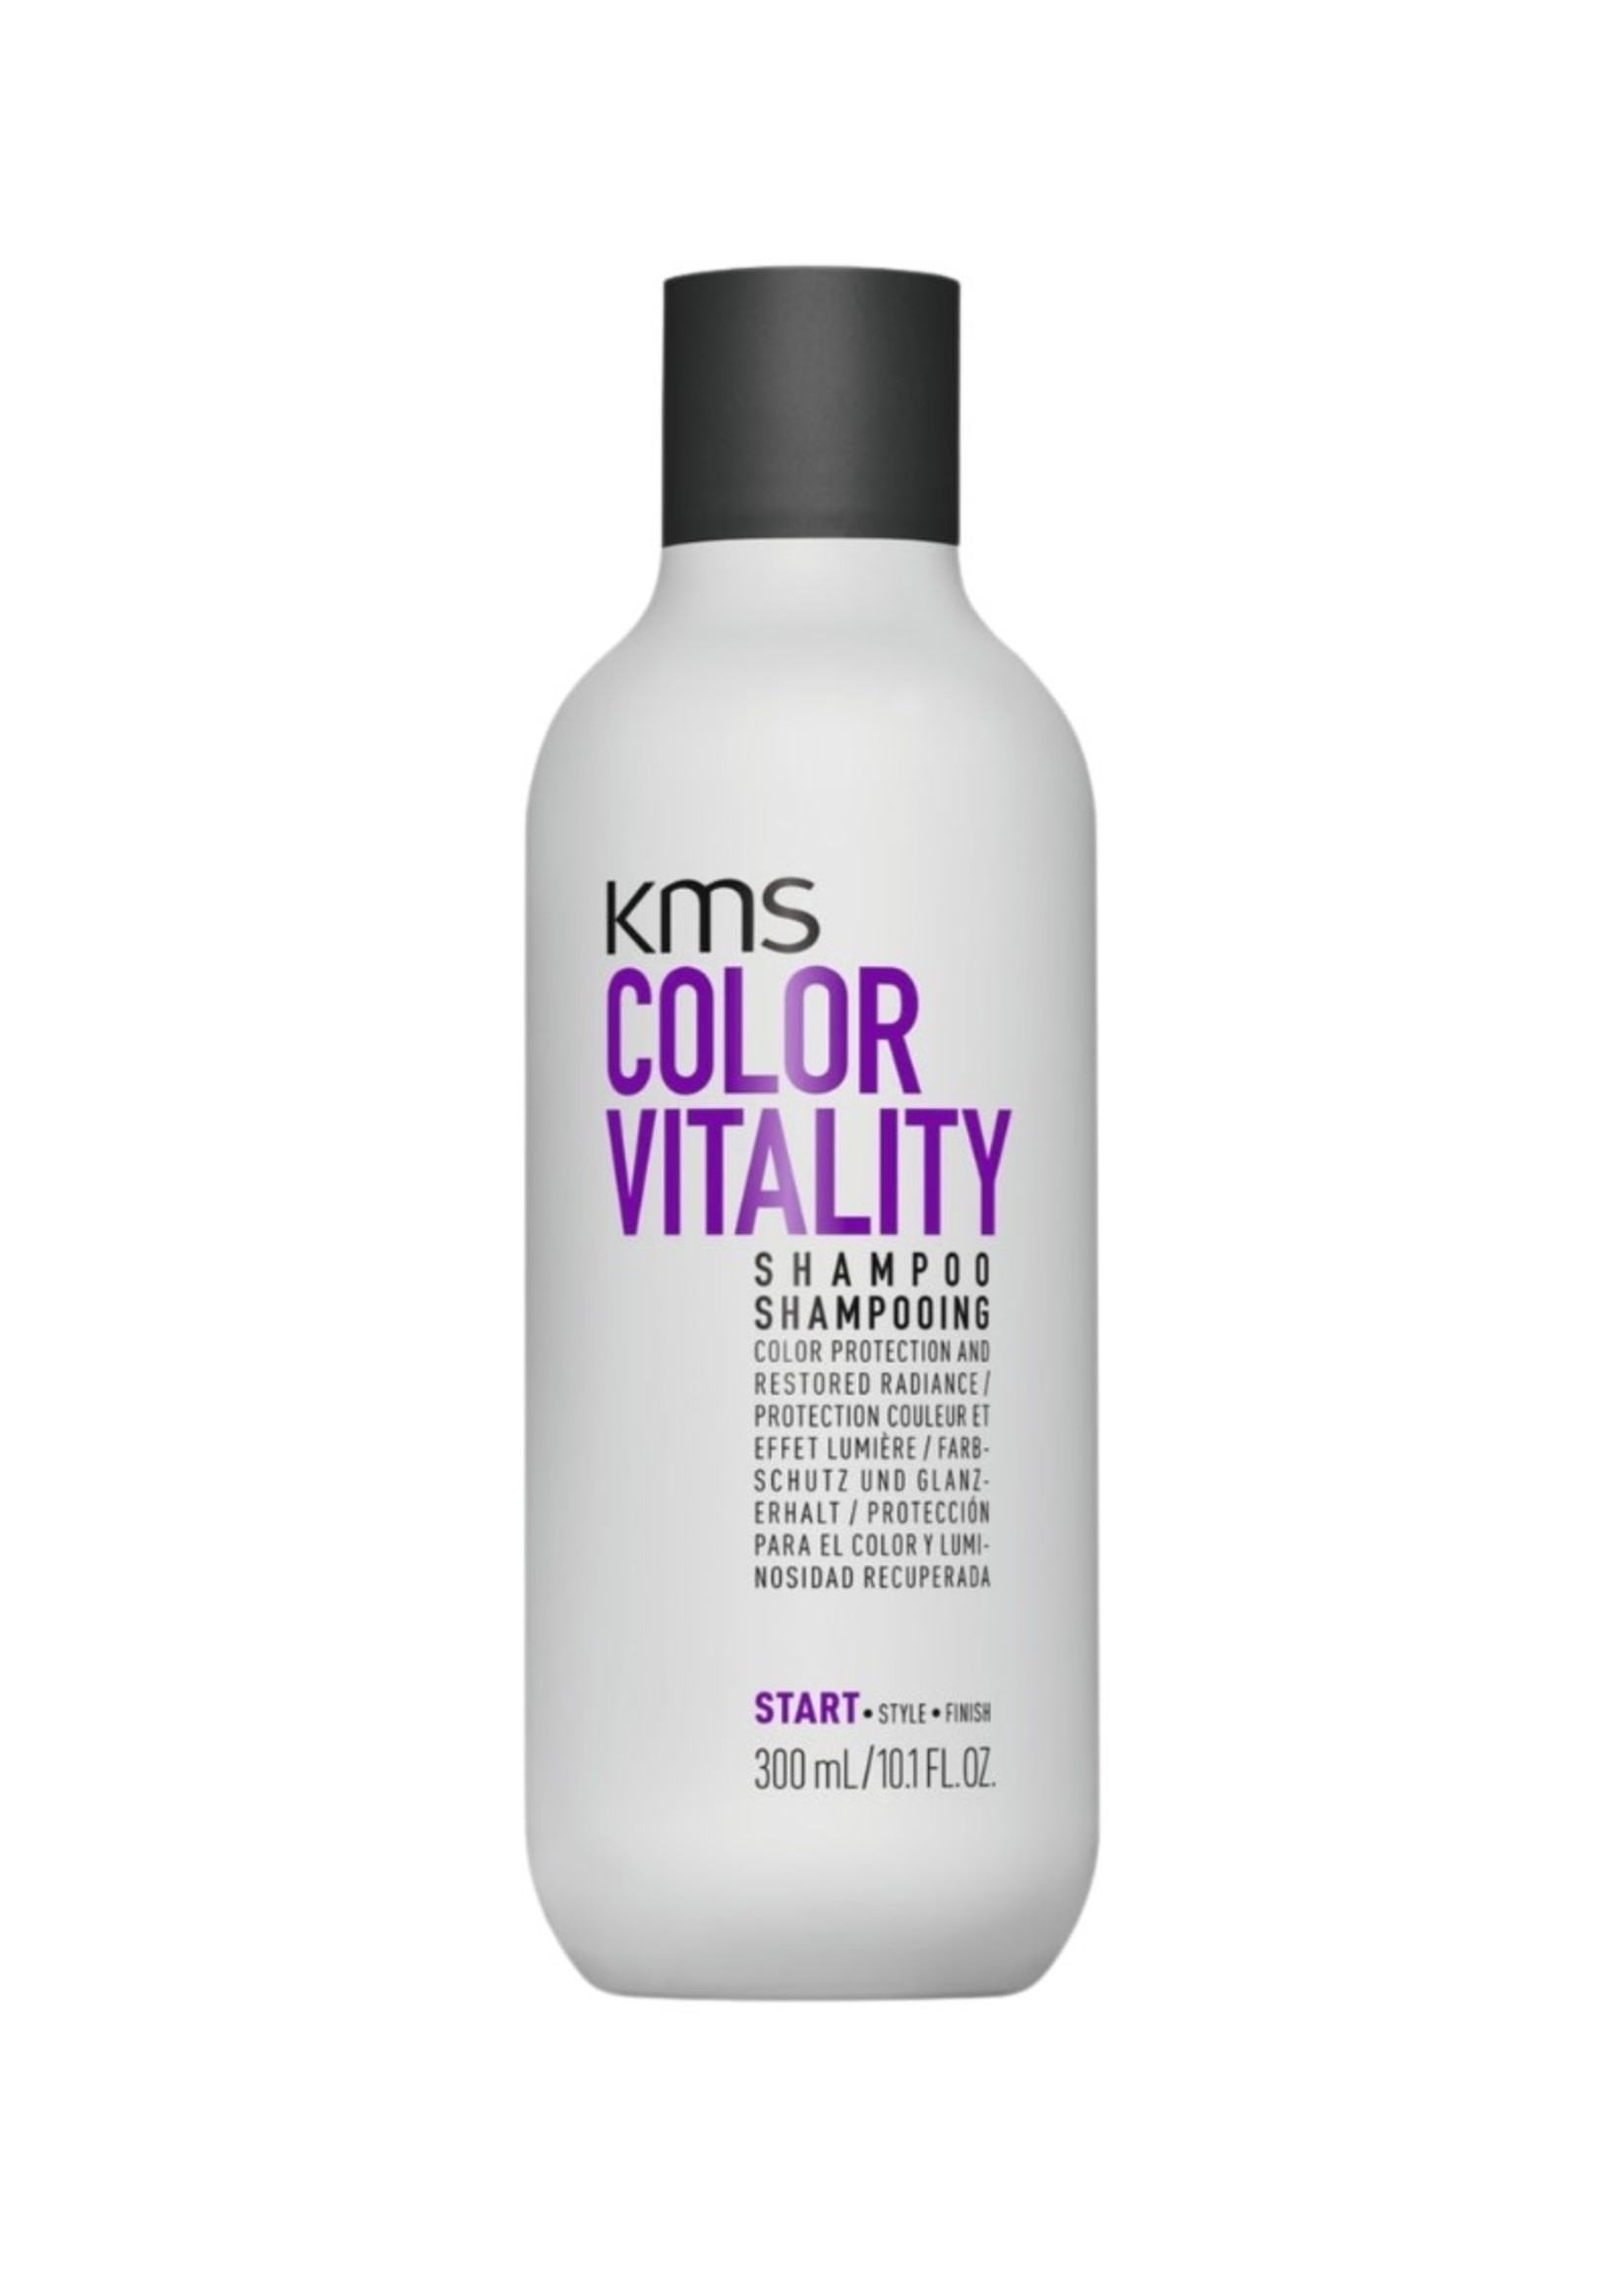 KMS KMS Colorvitality Shampoo 300ml